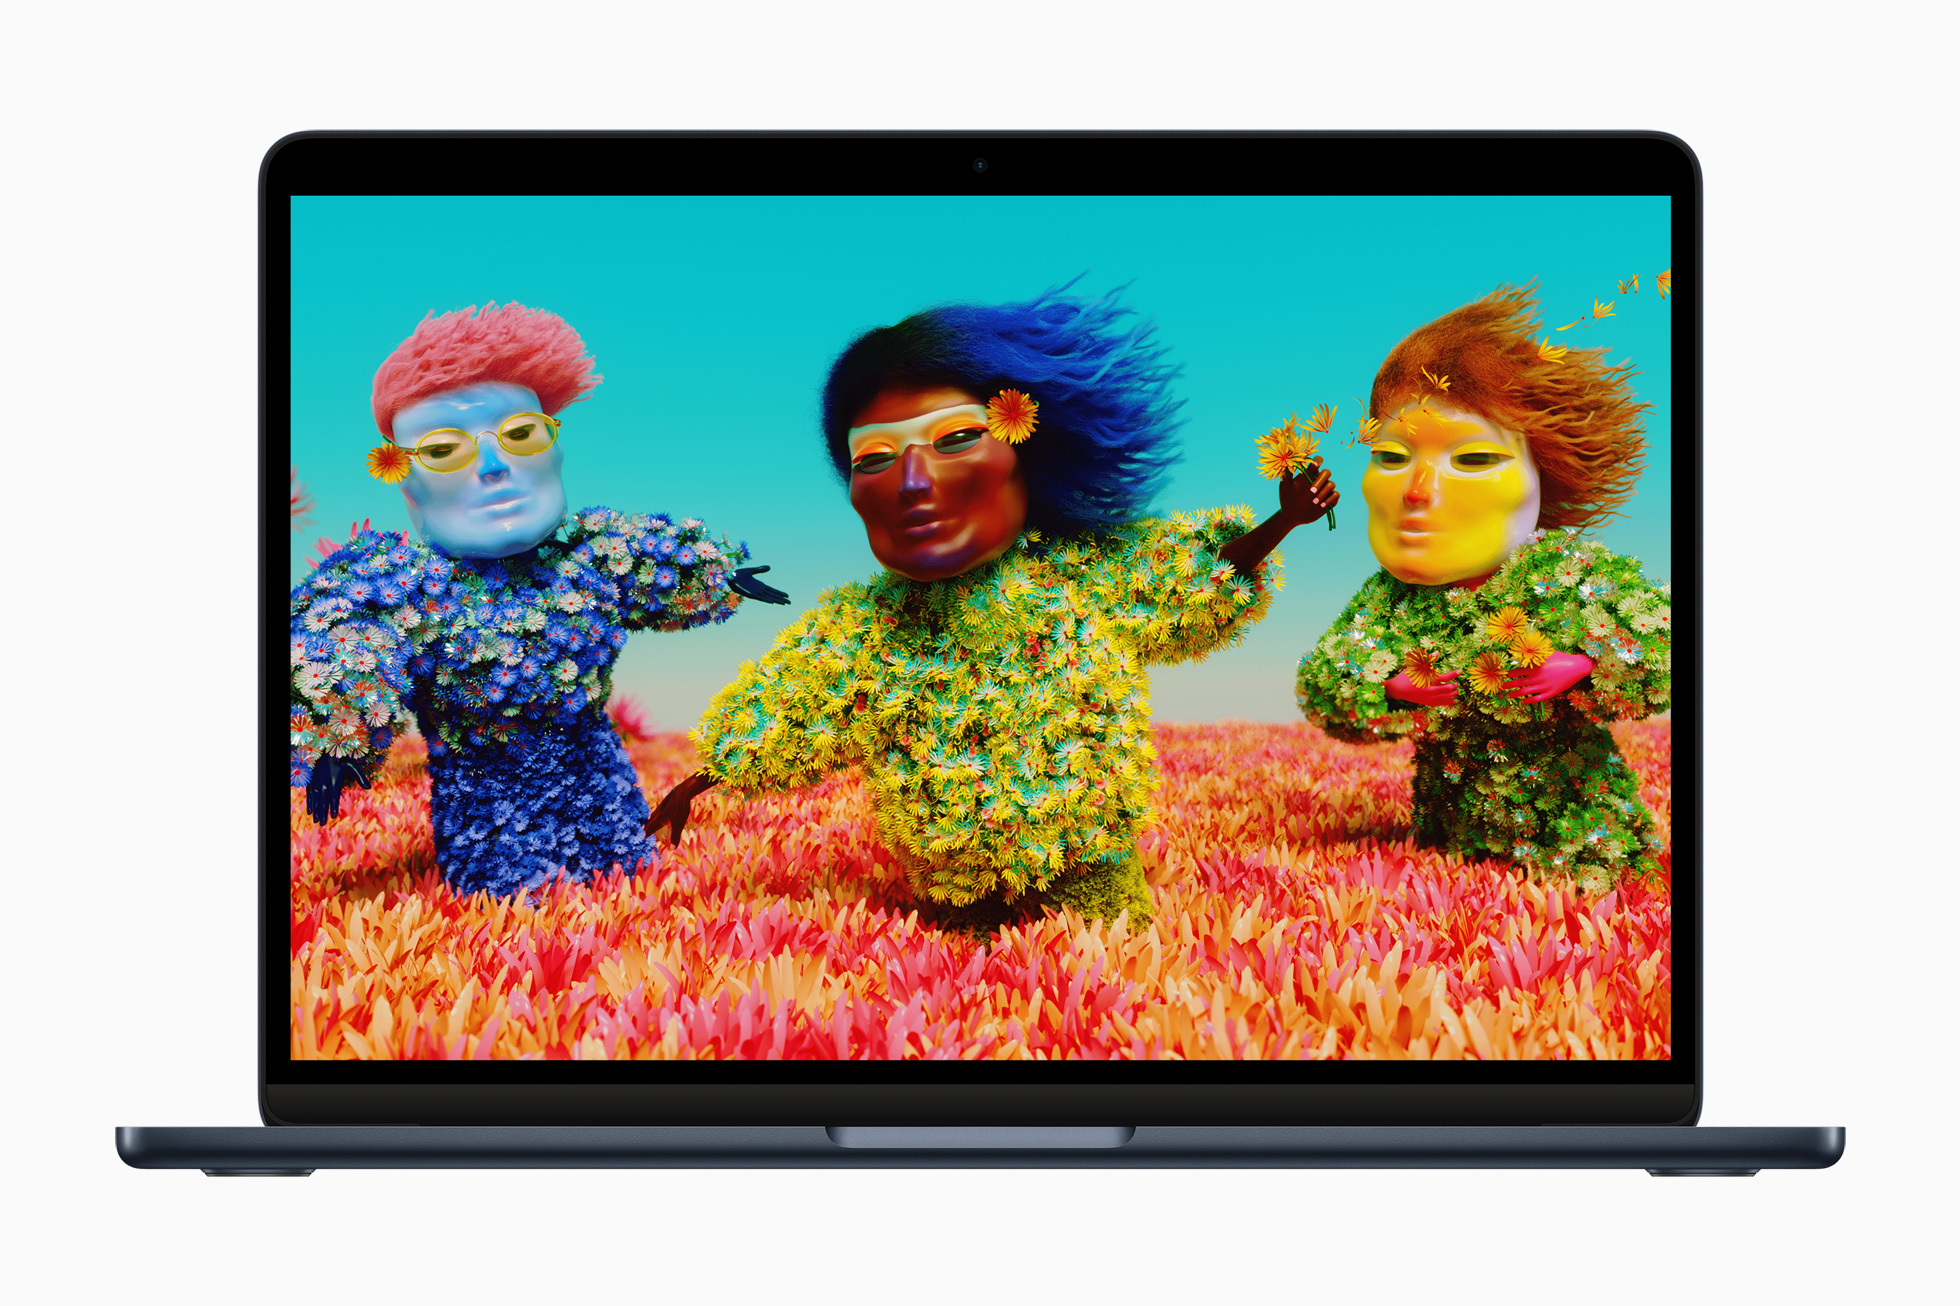 全新 MacBook Air 搭載絢麗的 13.6 吋 Liquid Retina 顯示器，亮度達到 500 尼特，比以往高出 25%。